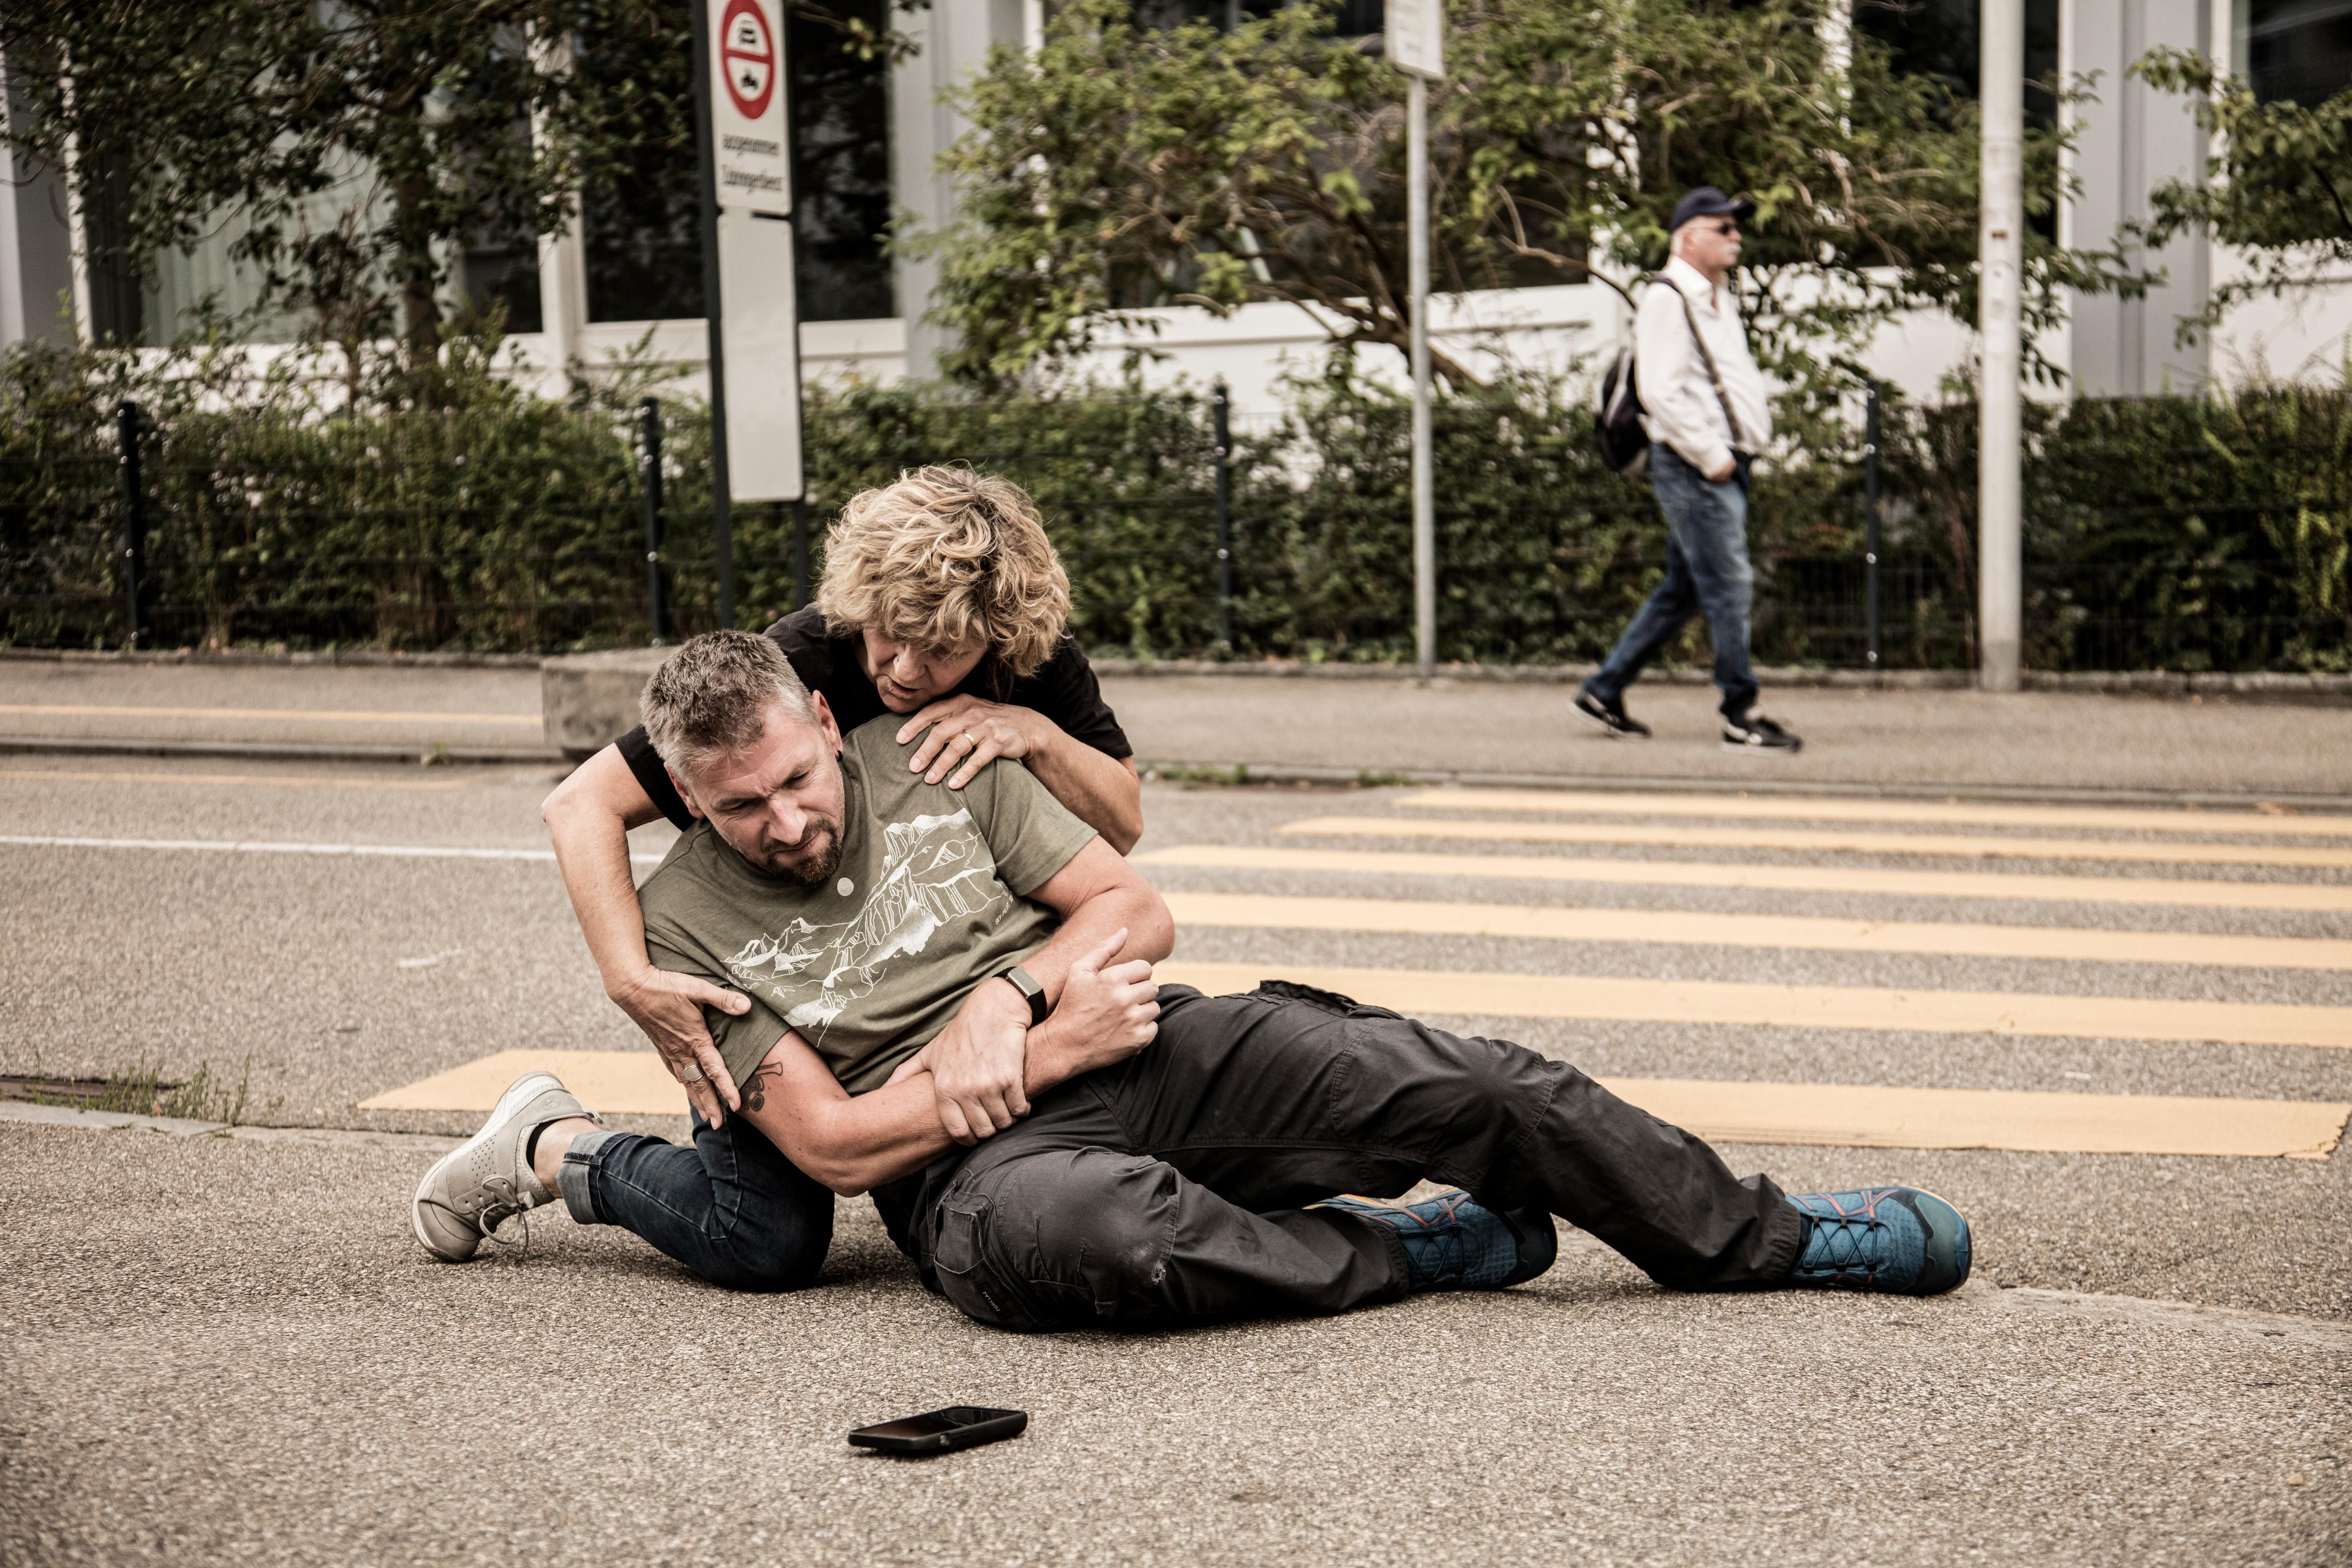 Un homme est tombé. Blessé, il est allongé sur le sol. Une passante s’occupe de lui et lui prodigue les premiers soins.